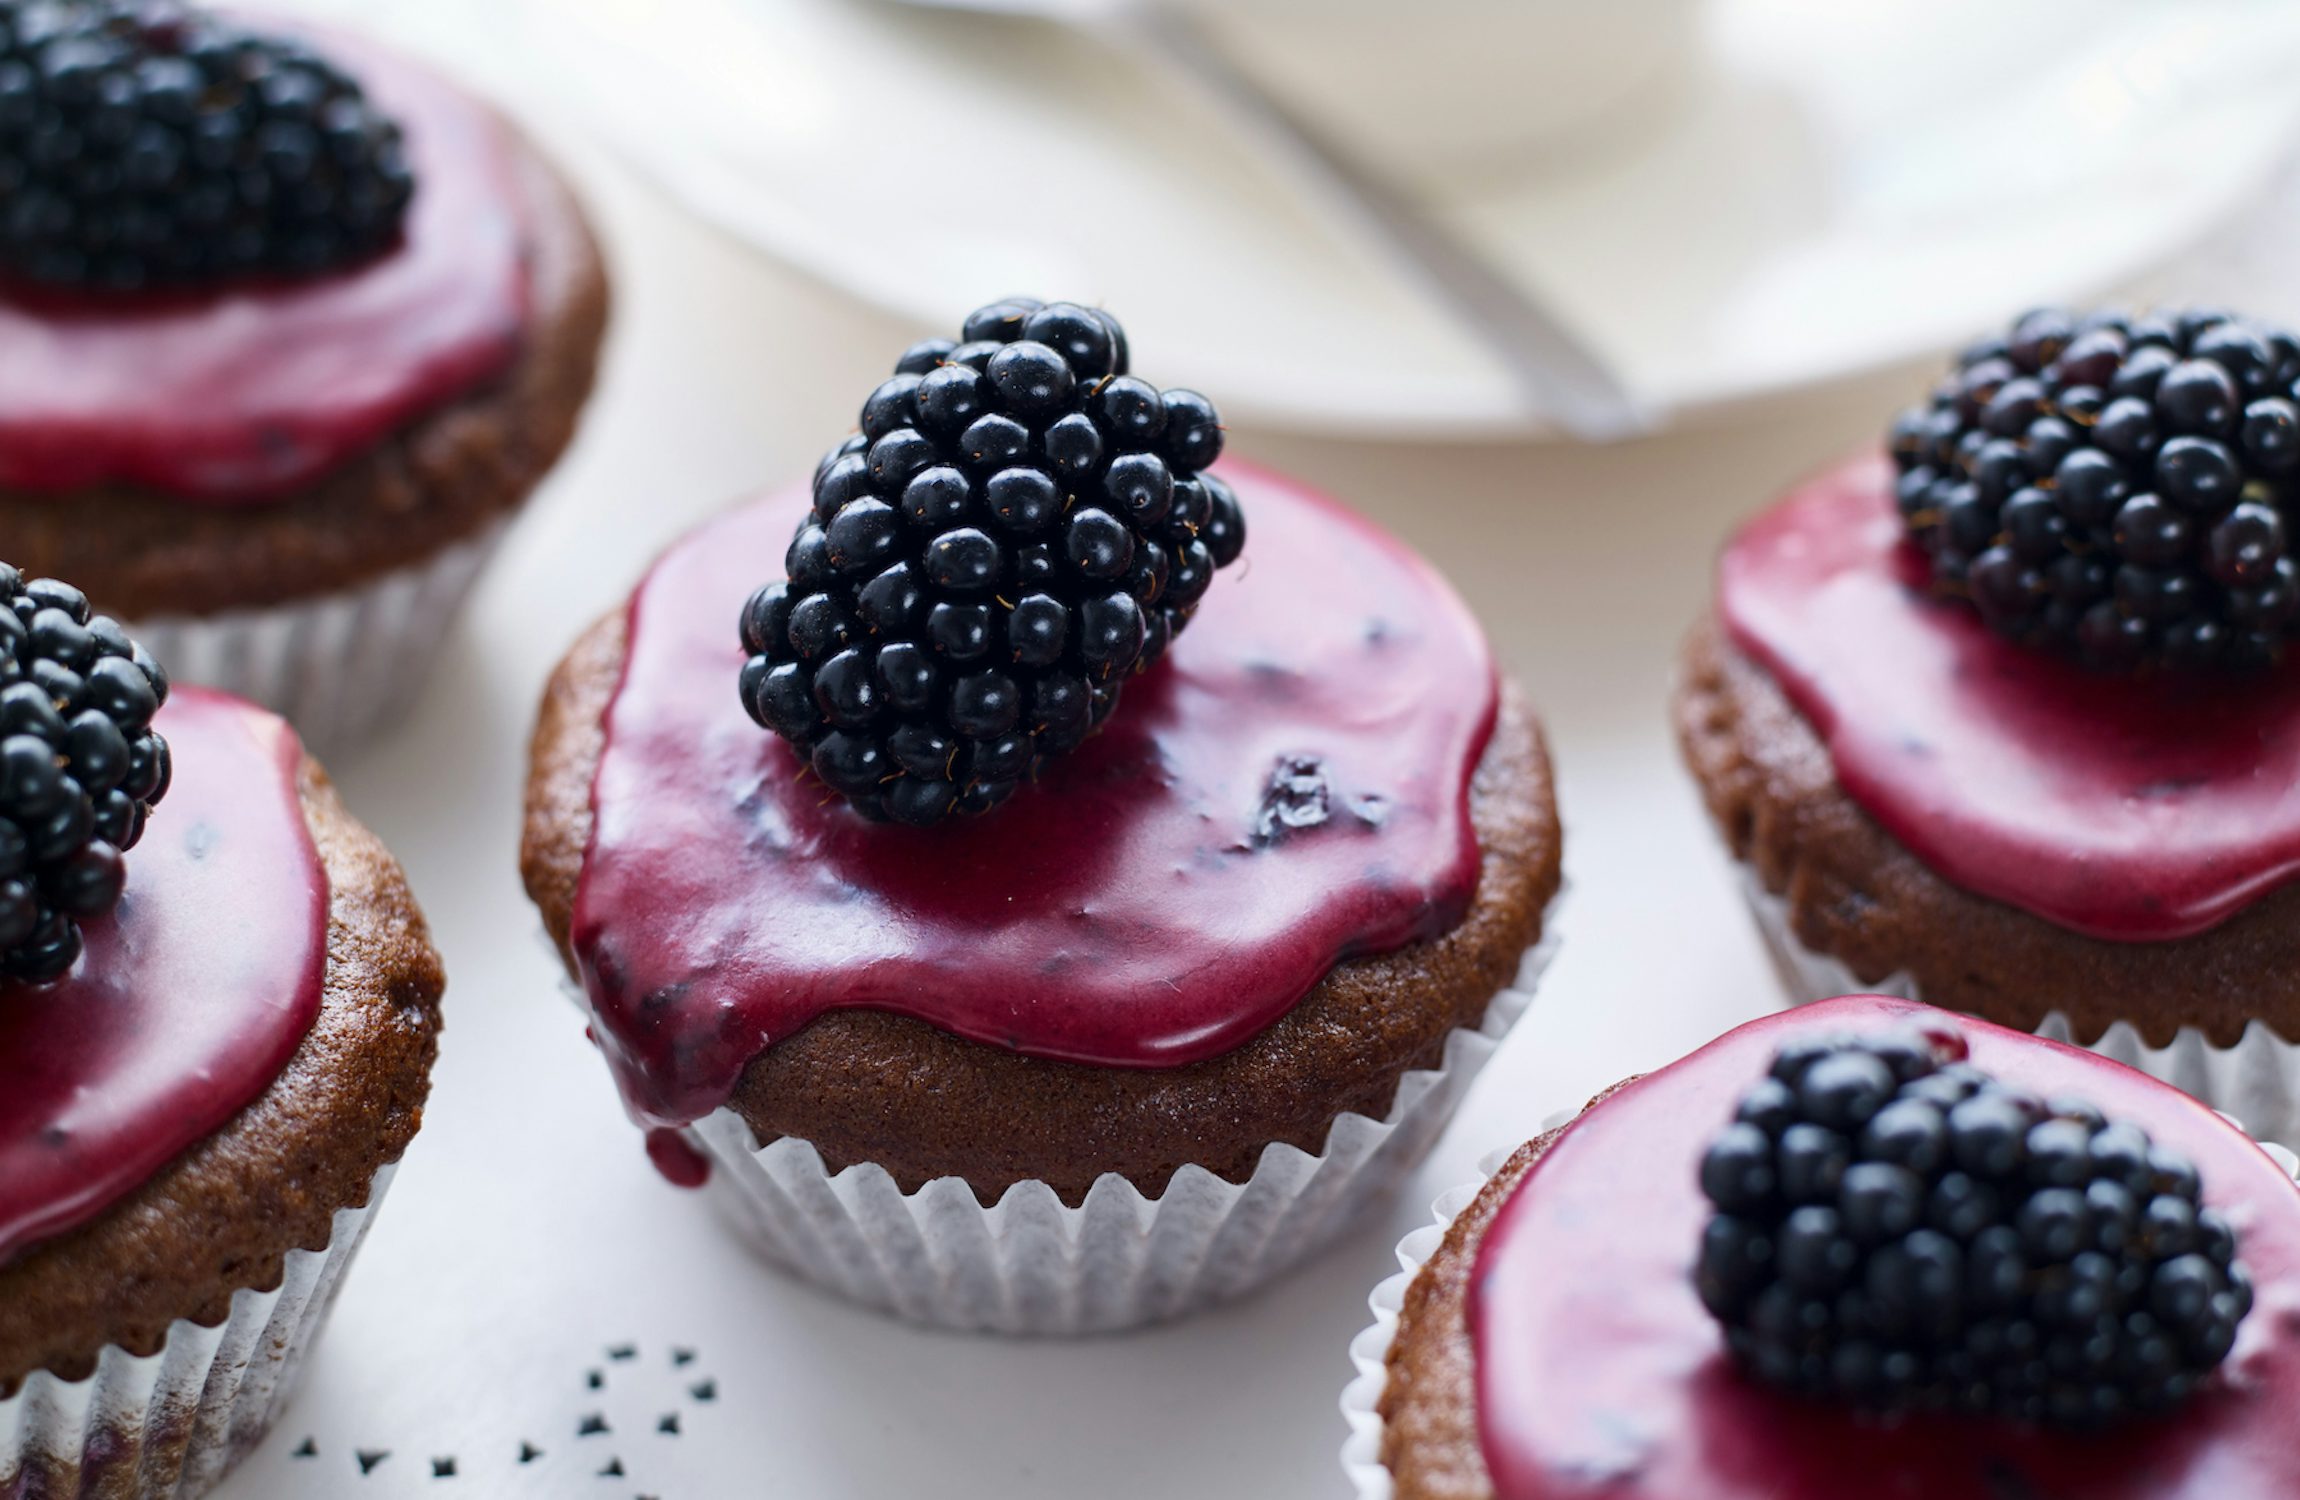 Vegan Blackberry & Chocolate Muffins